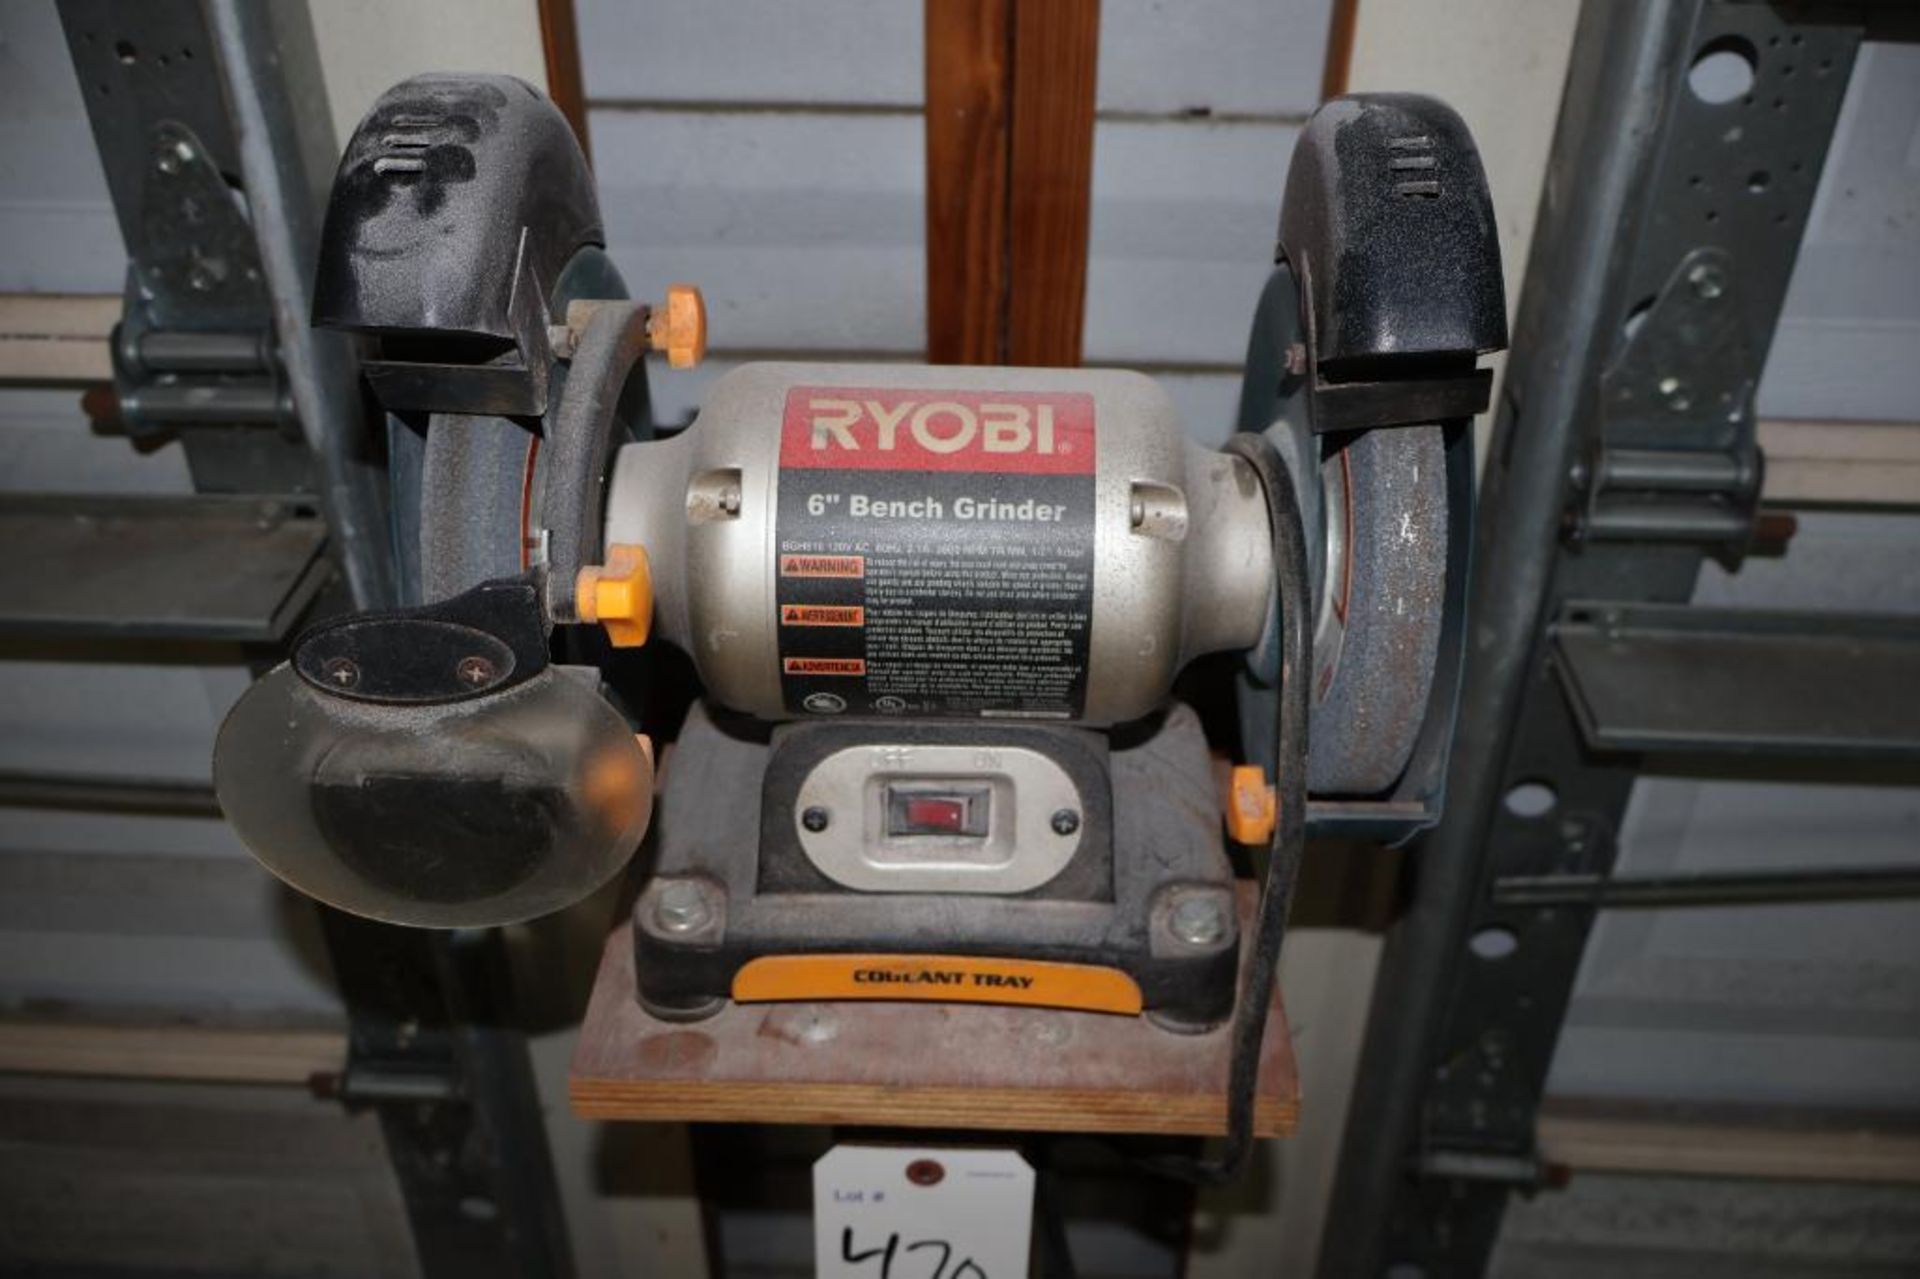 Ryobi 6" bench grinder - Image 2 of 6